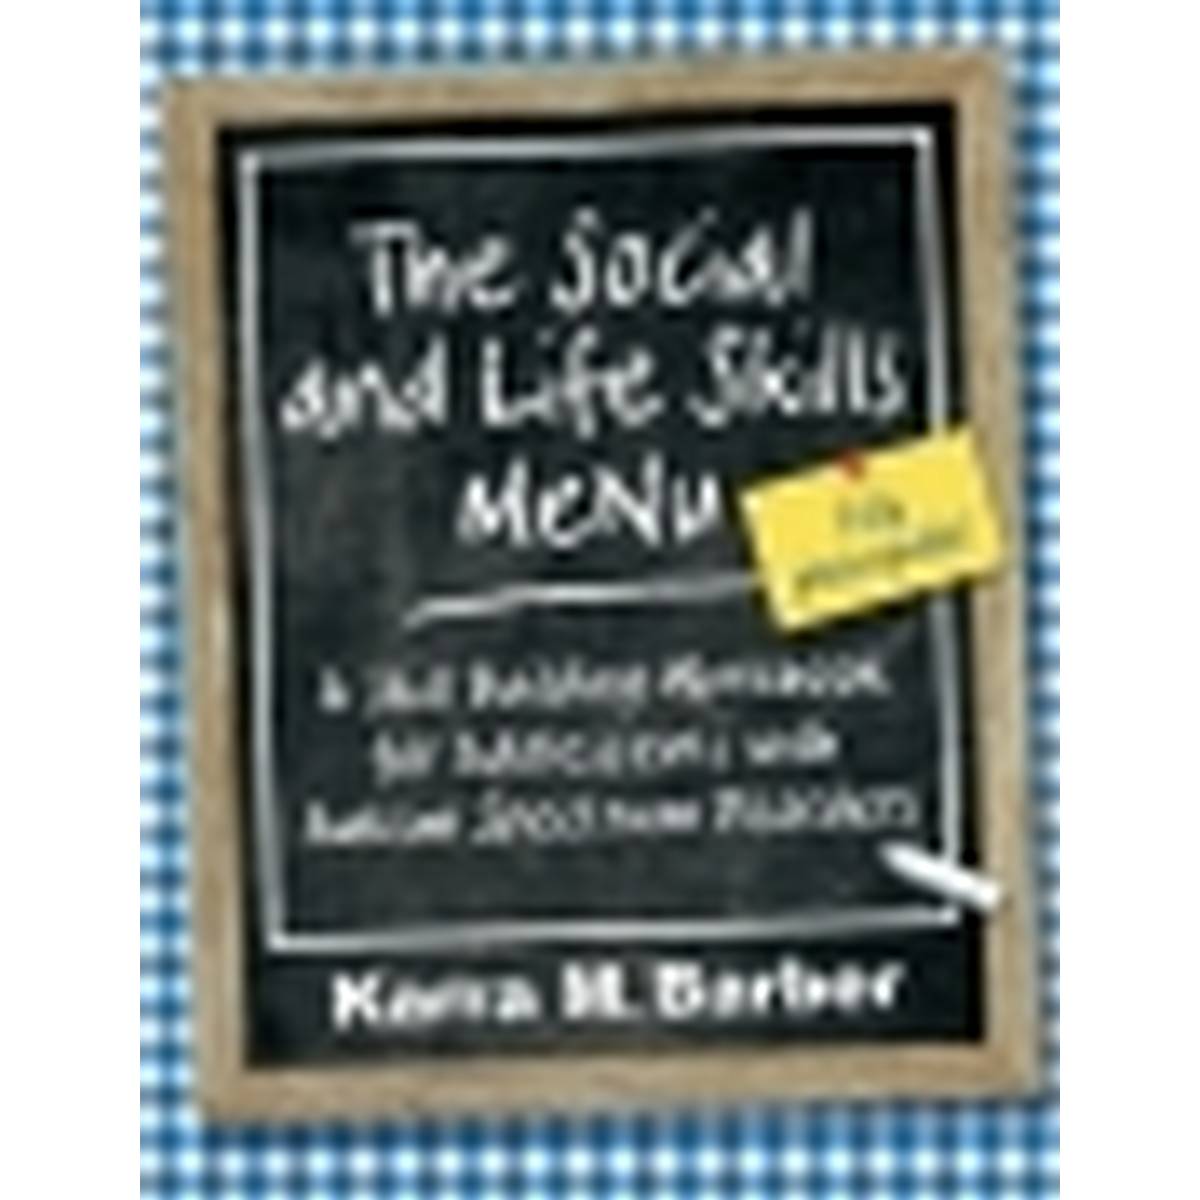 The Social and Life Skills Menu